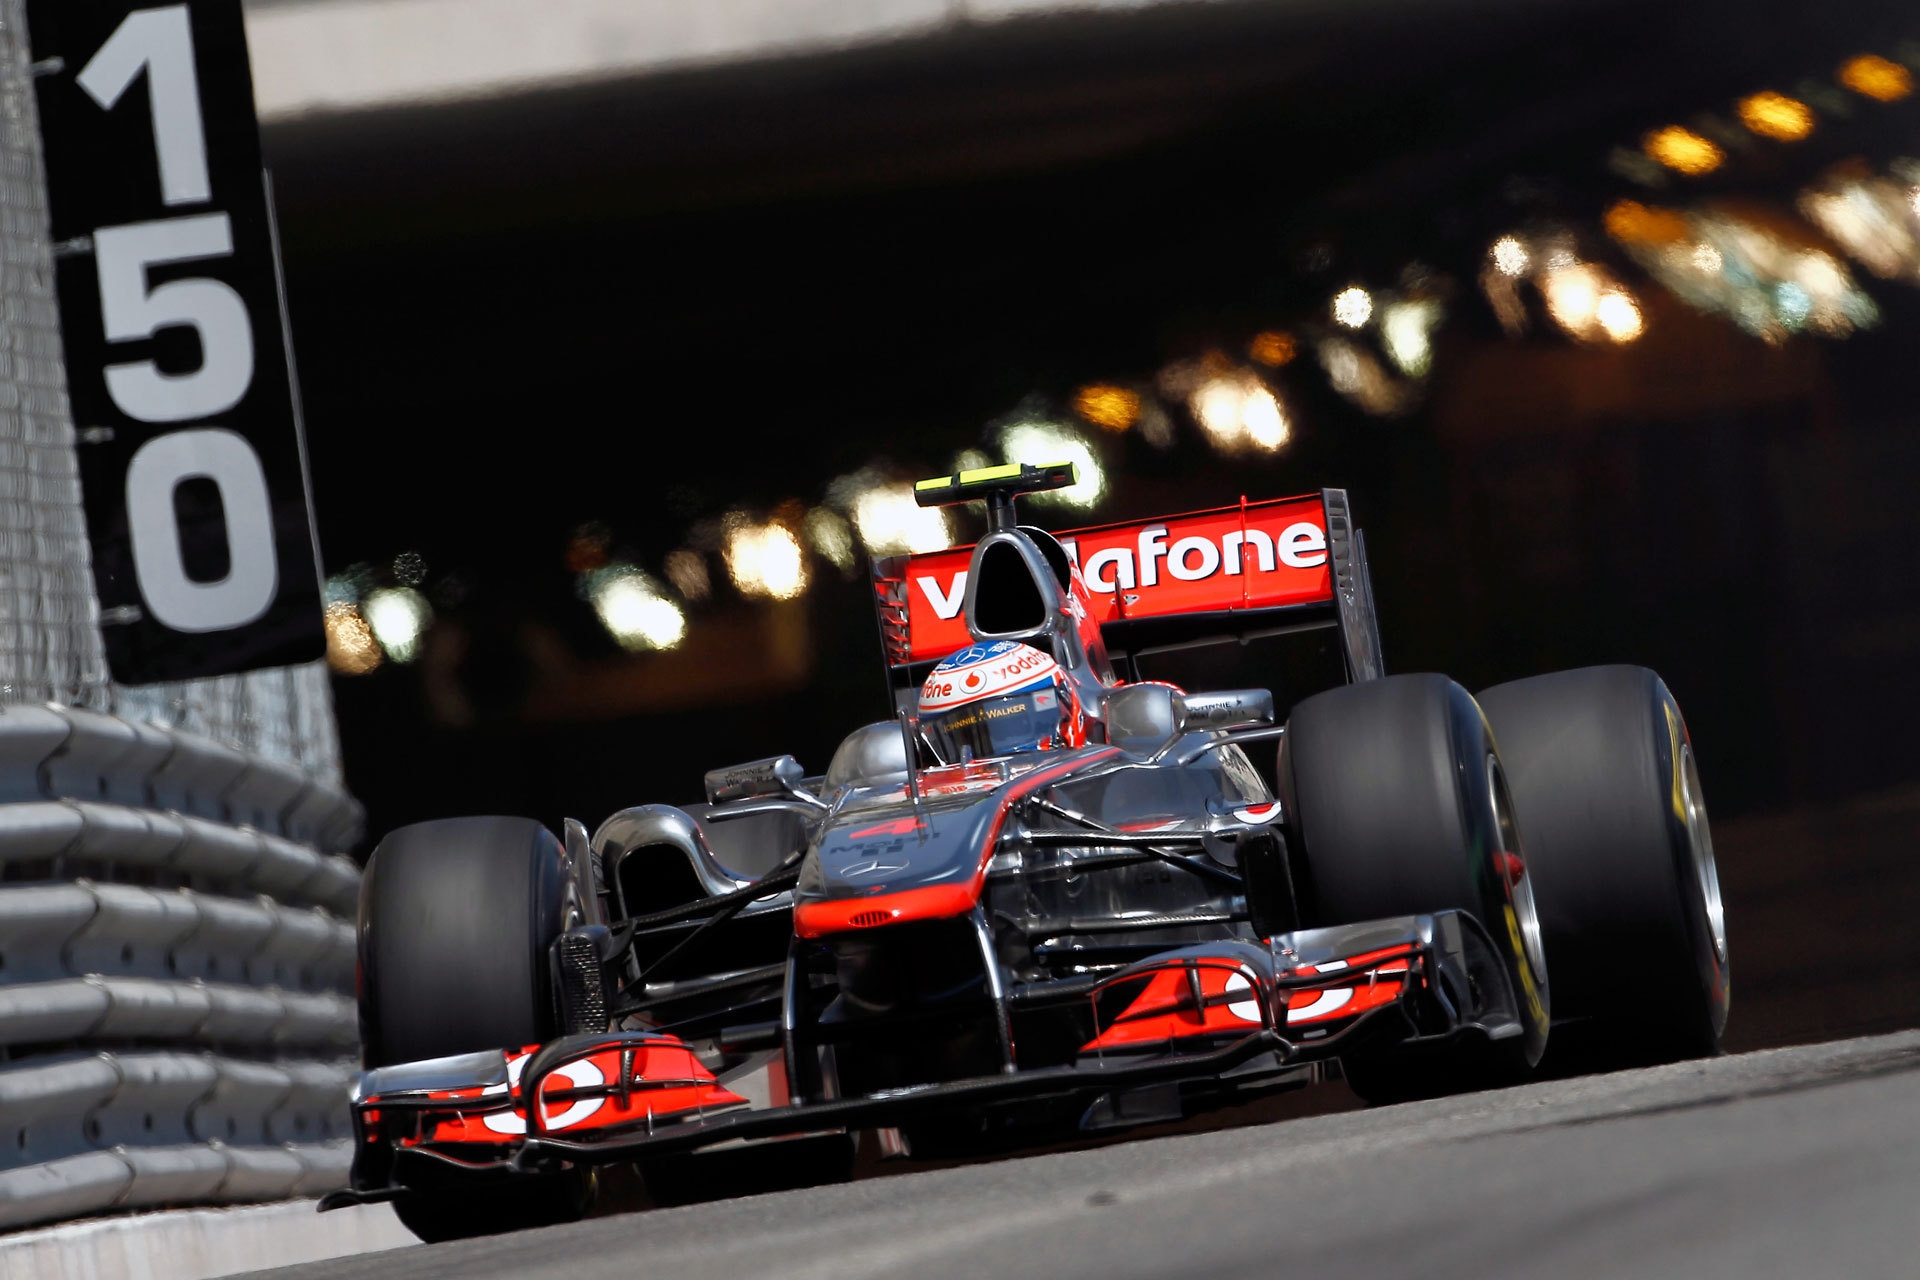 Télécharger des fonds d'écran Monaco Grand Prix HD